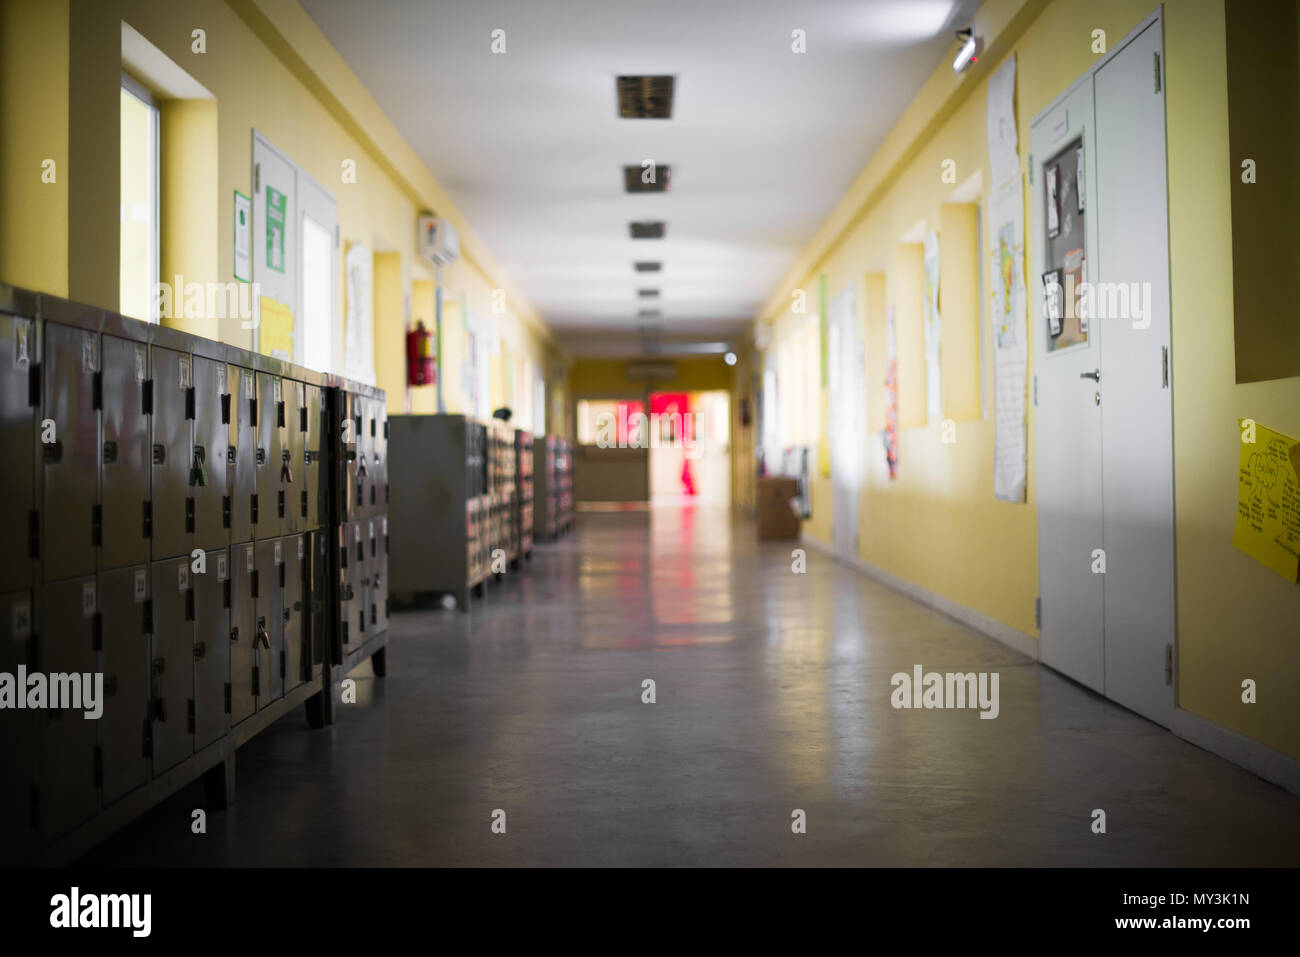 Empty school corridor Stock Photo